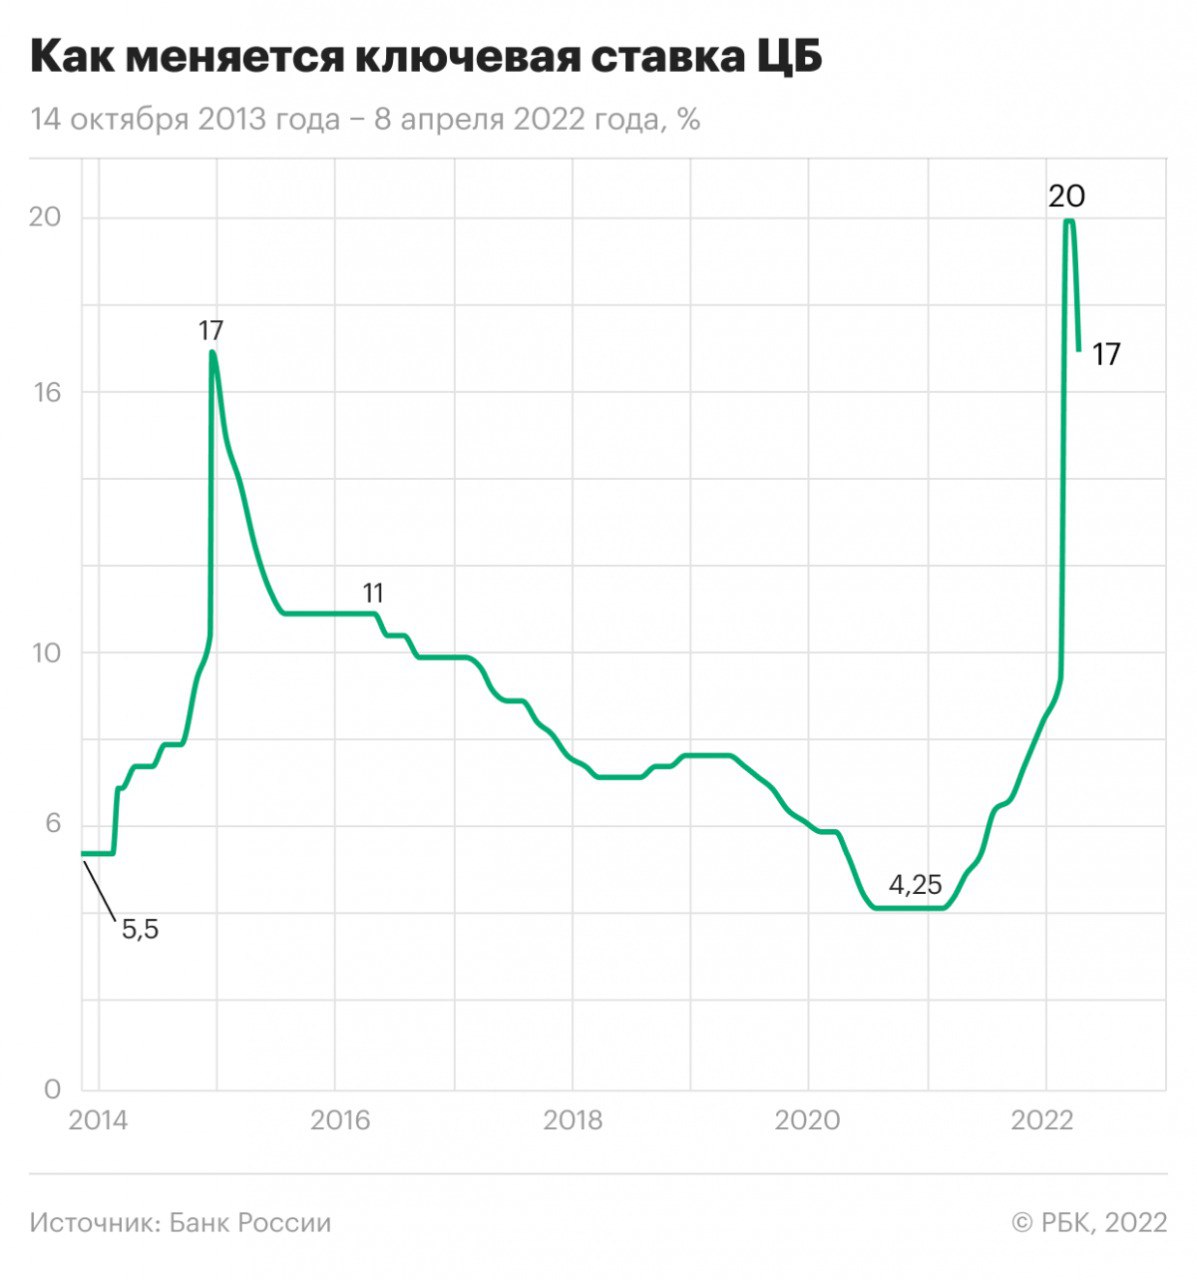 Изменение ключевой ставки Центробанка России 14 октября 2013 года — 11 апреля 2022 года
 